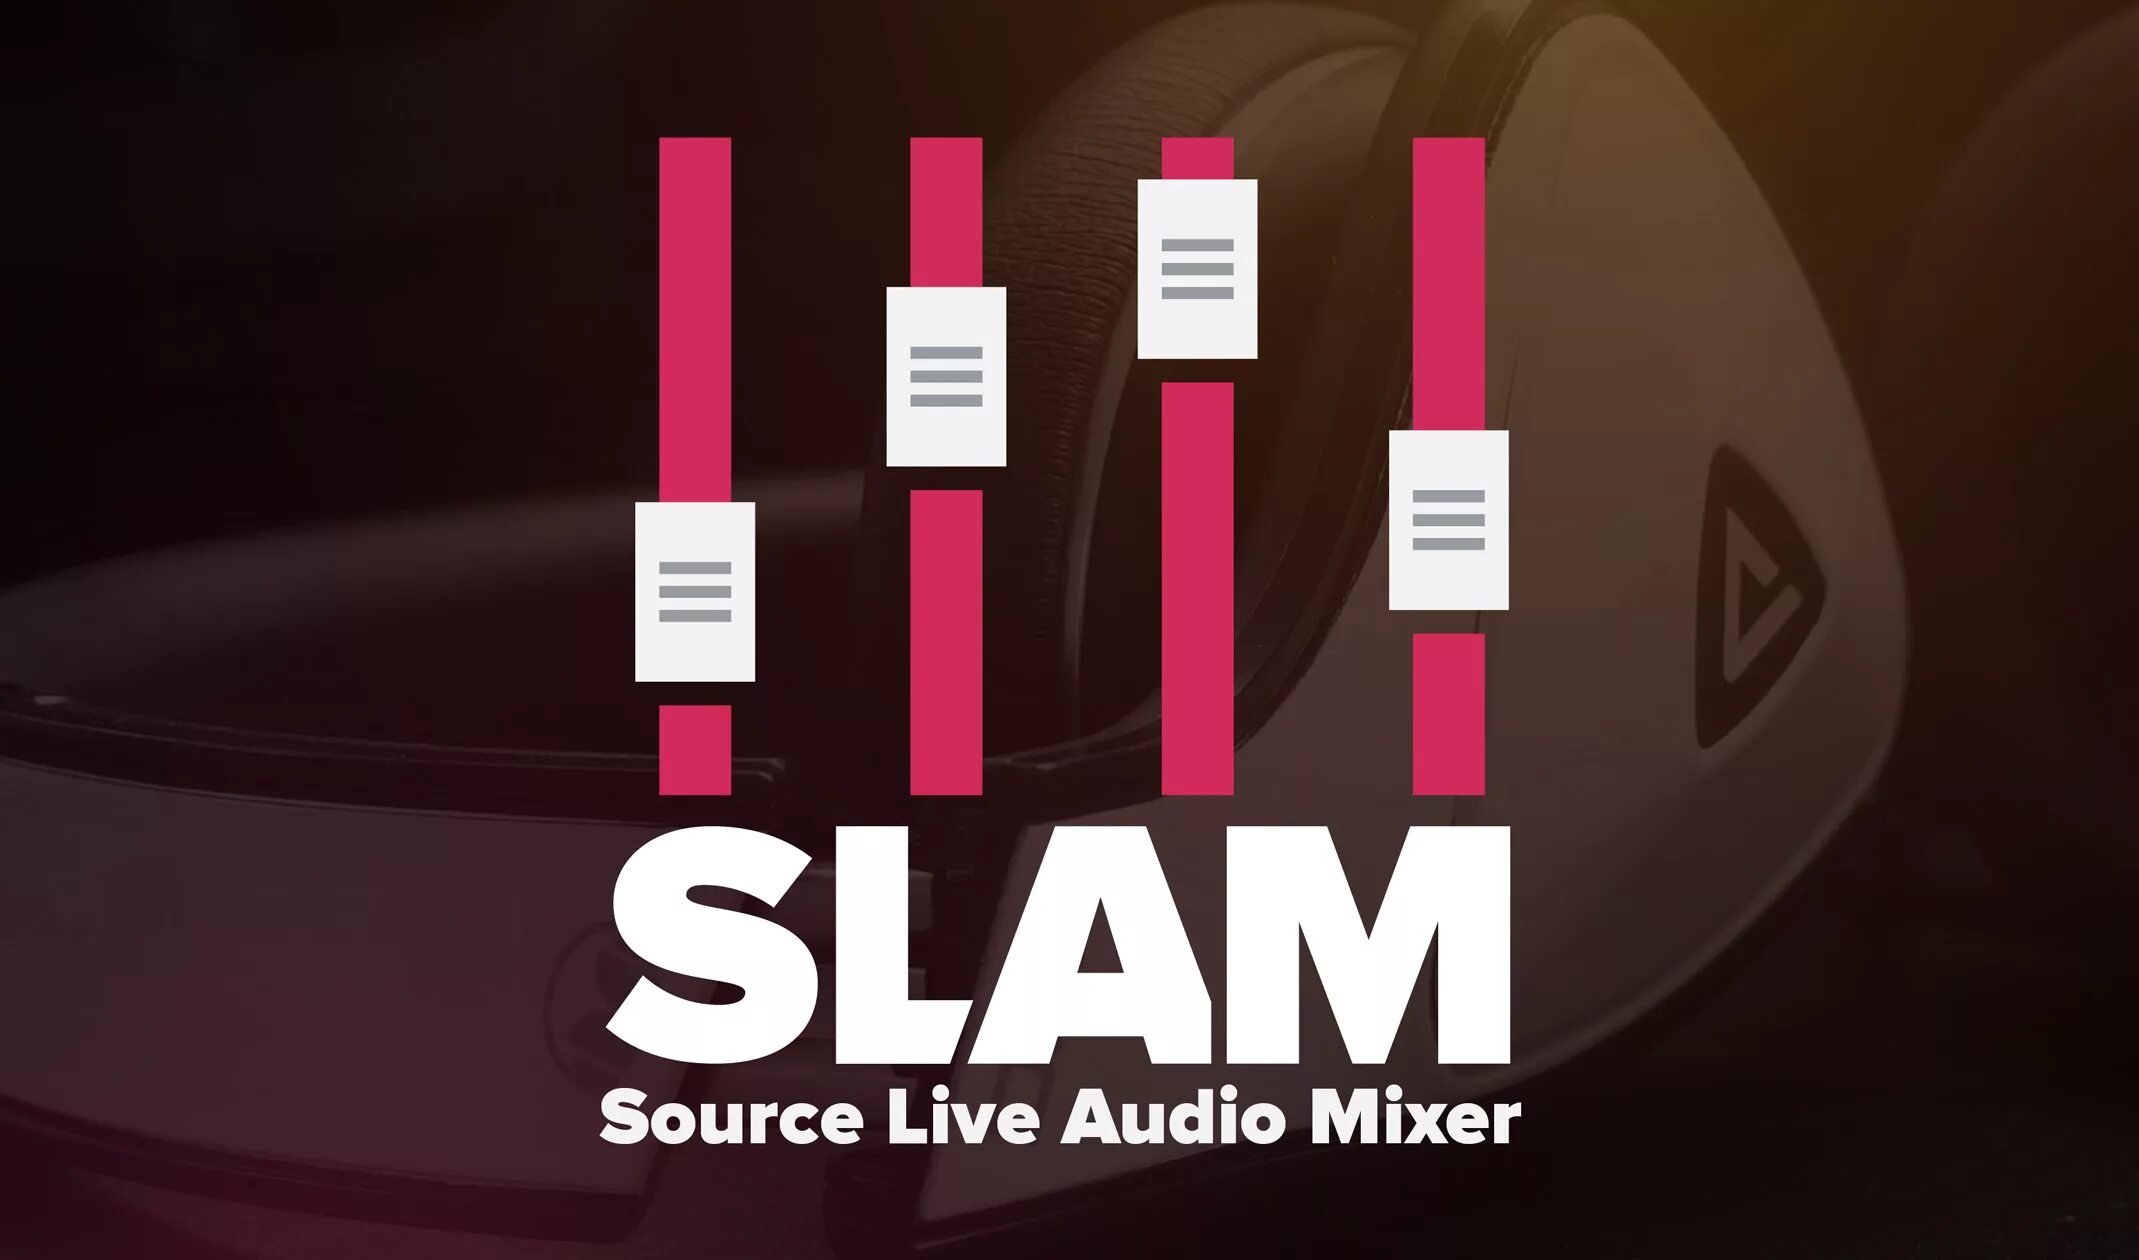 Slam CS. Slam CSGO. Slam Audio. Slam Programm. Share sounds